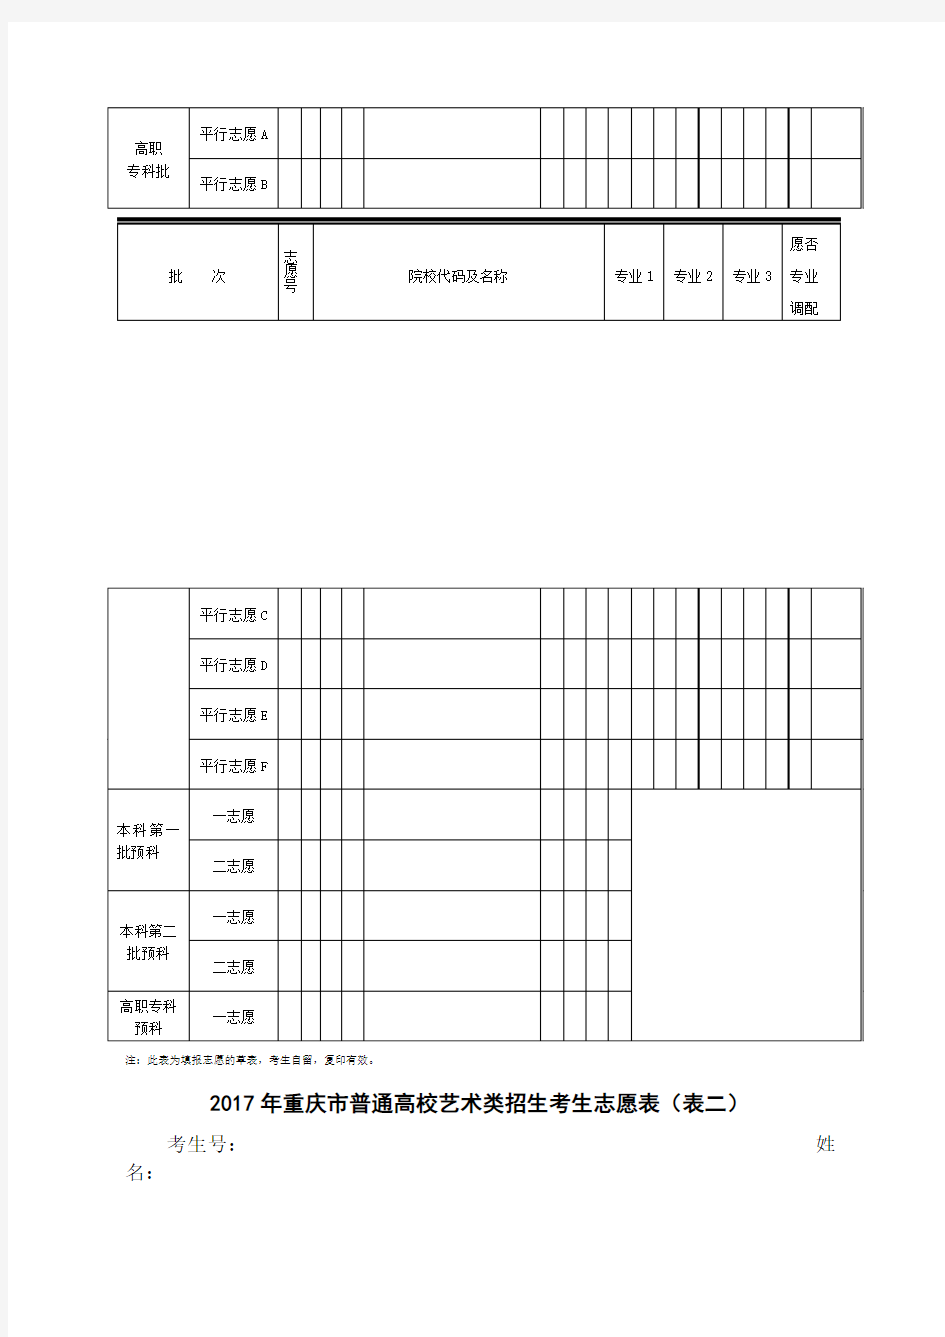 重庆市普通高校招生考生志愿表样表